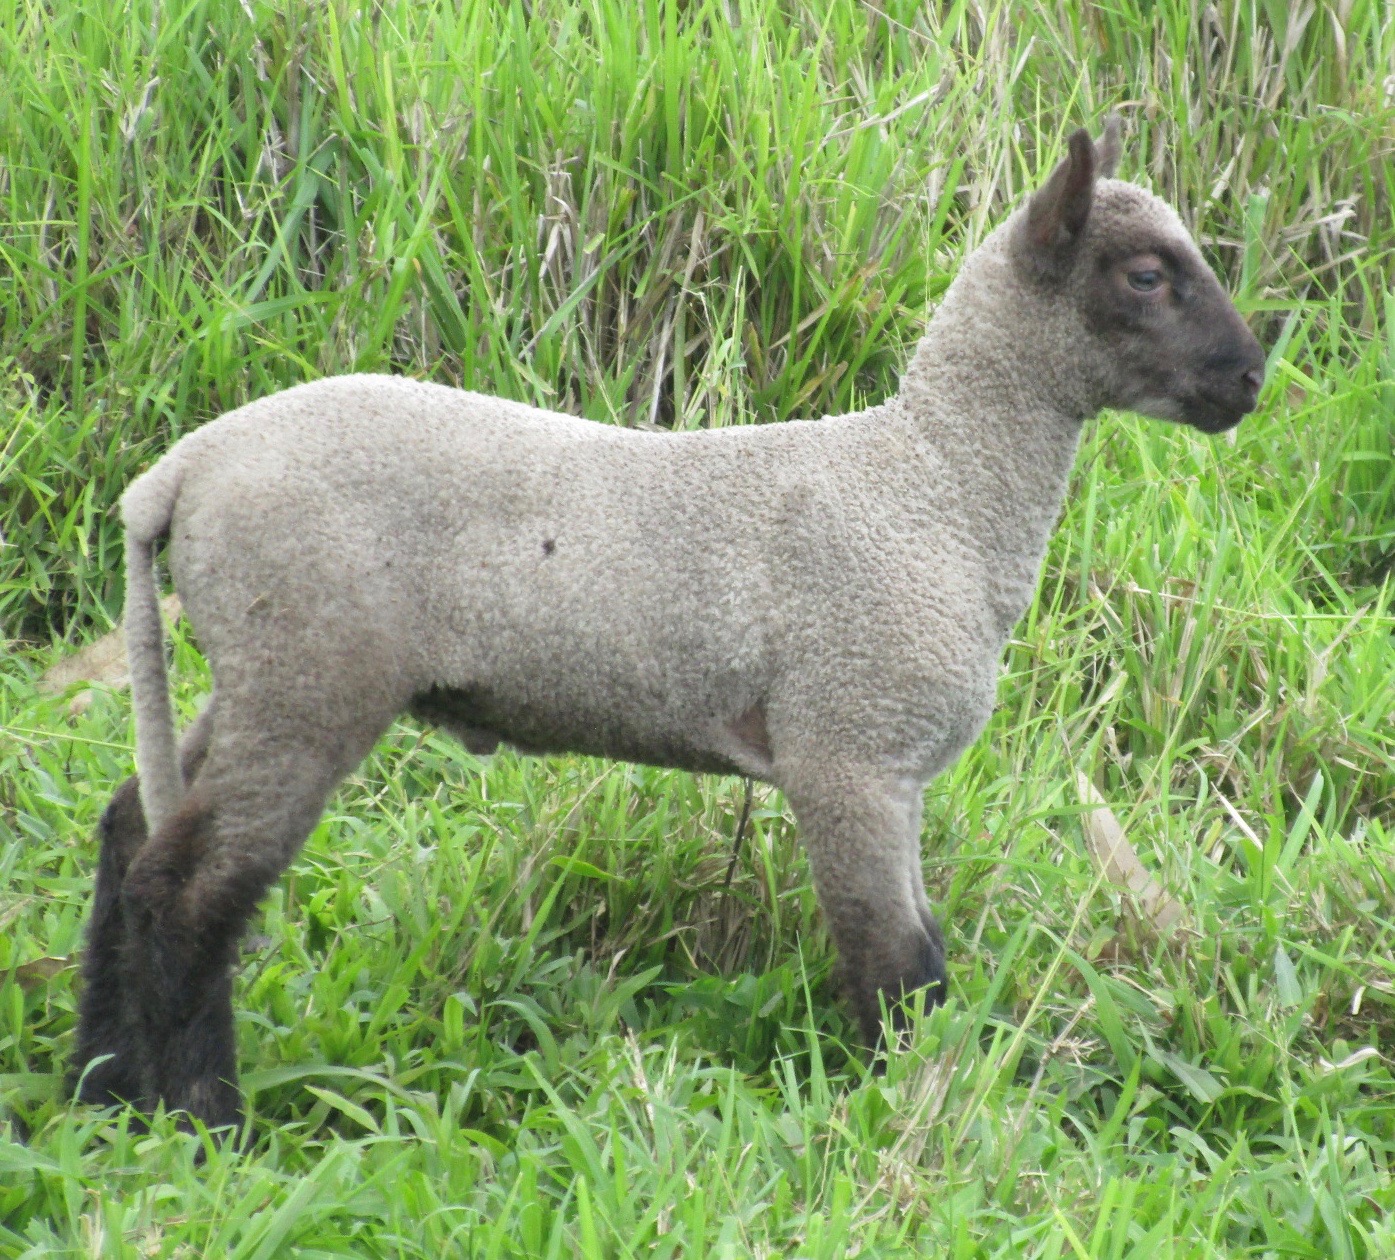 Ram lamb#1